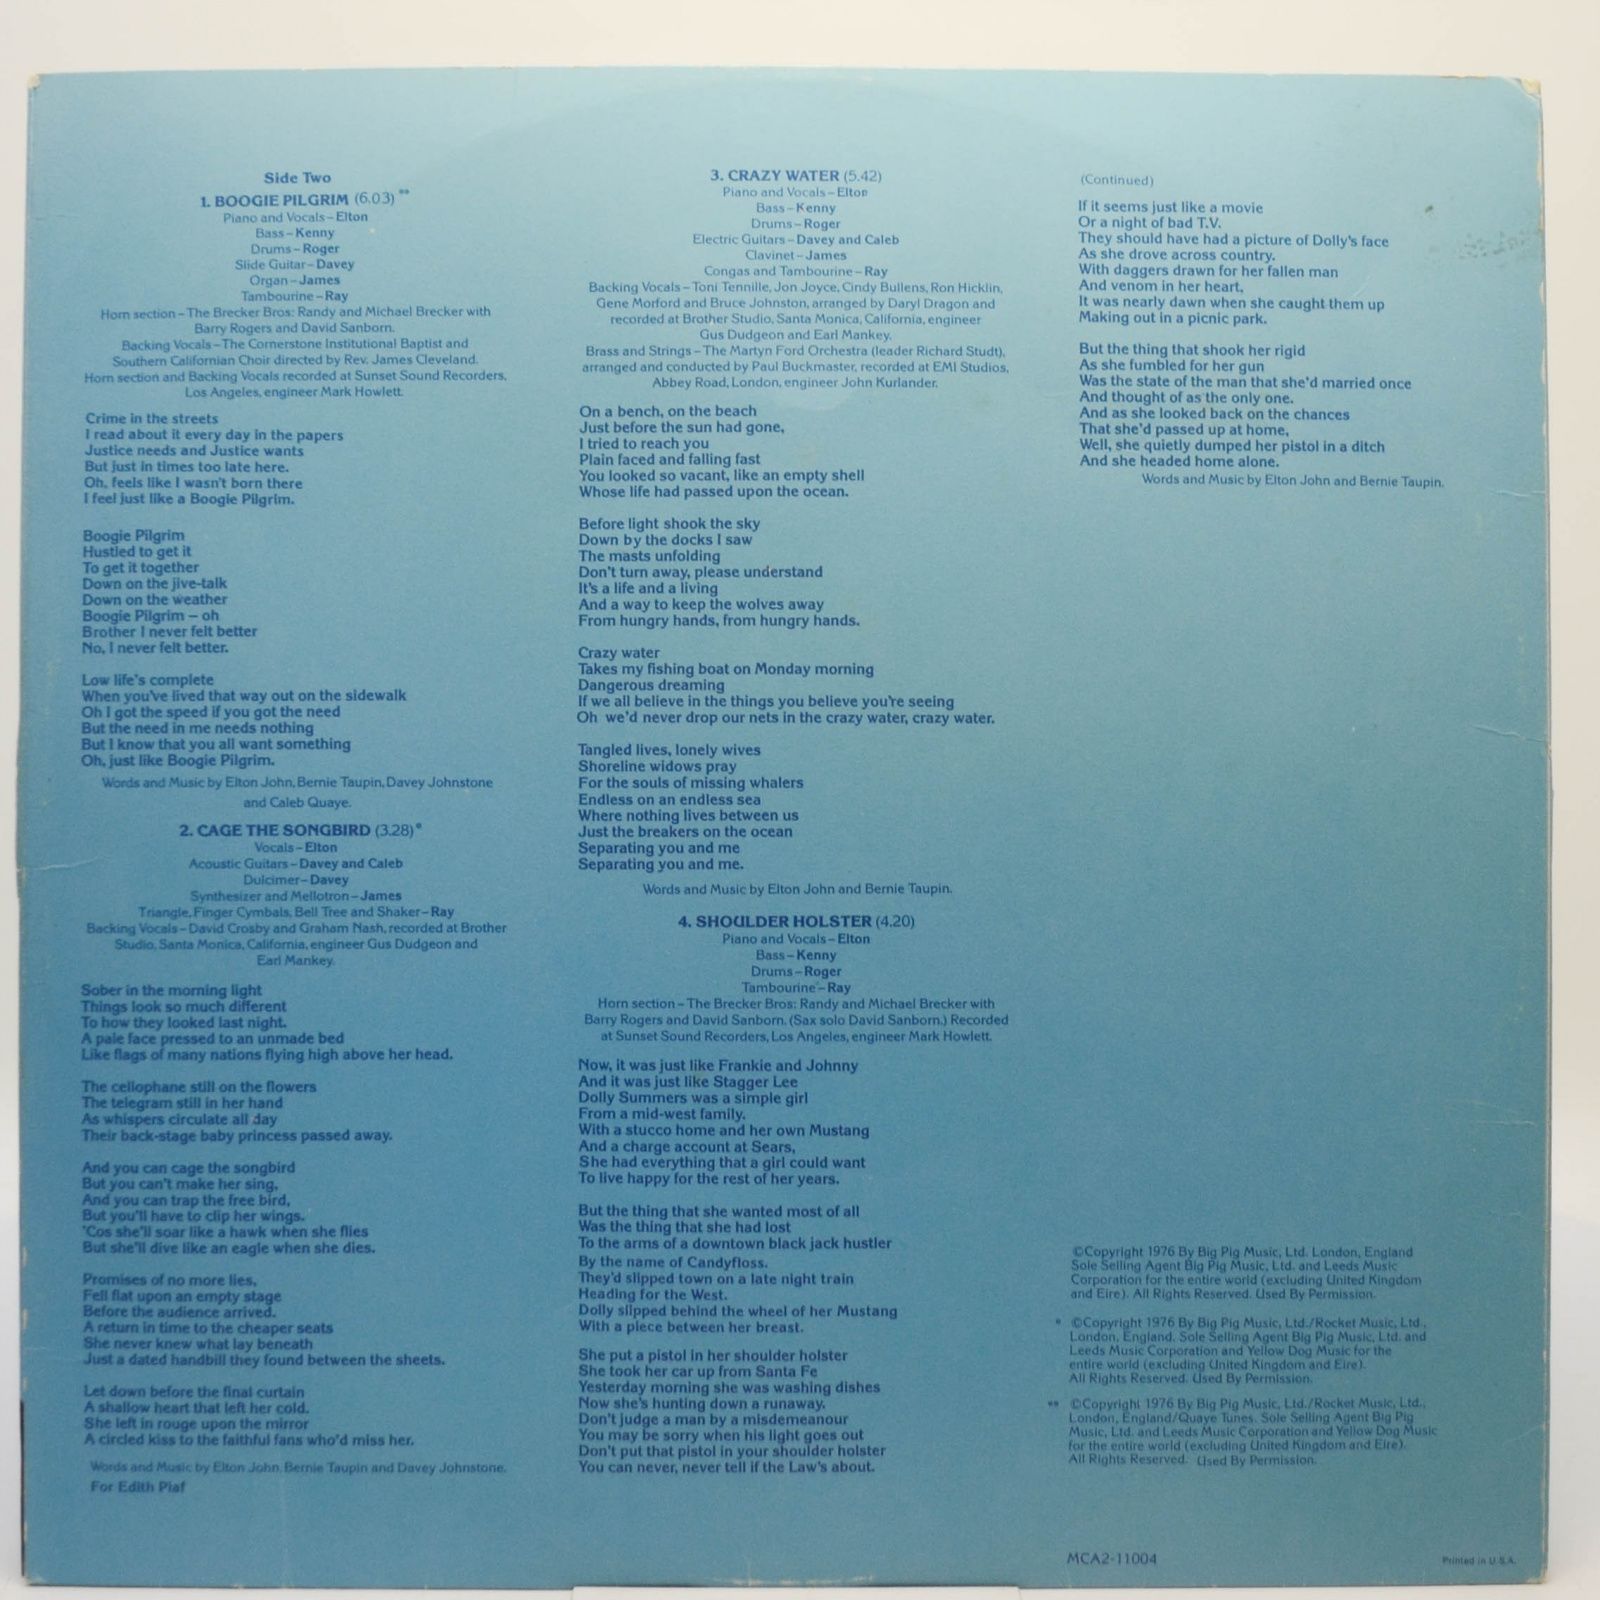 Elton John — Blue Moves (2LP), 1976